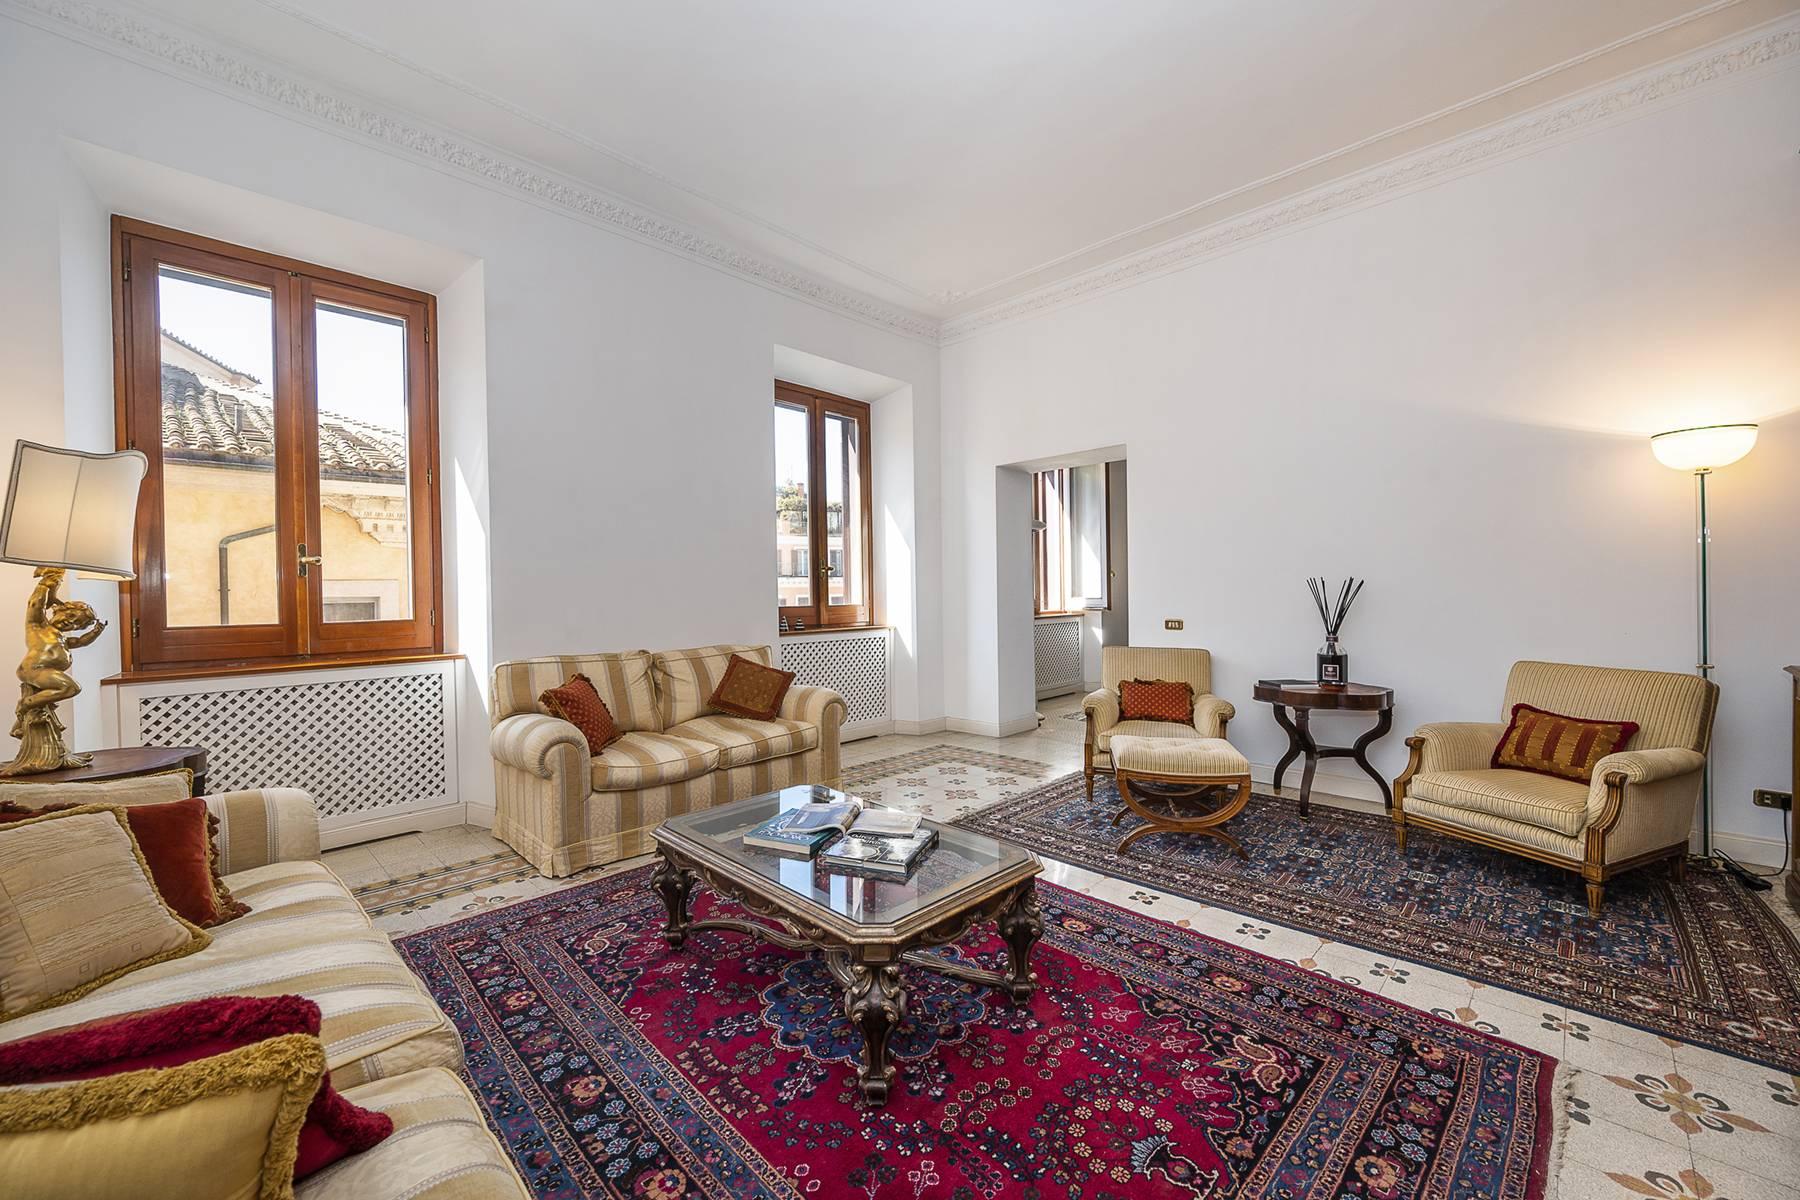 Appartement élégant situé dans un prestigieux bâtiment historique à Trinità de' Monti - 2